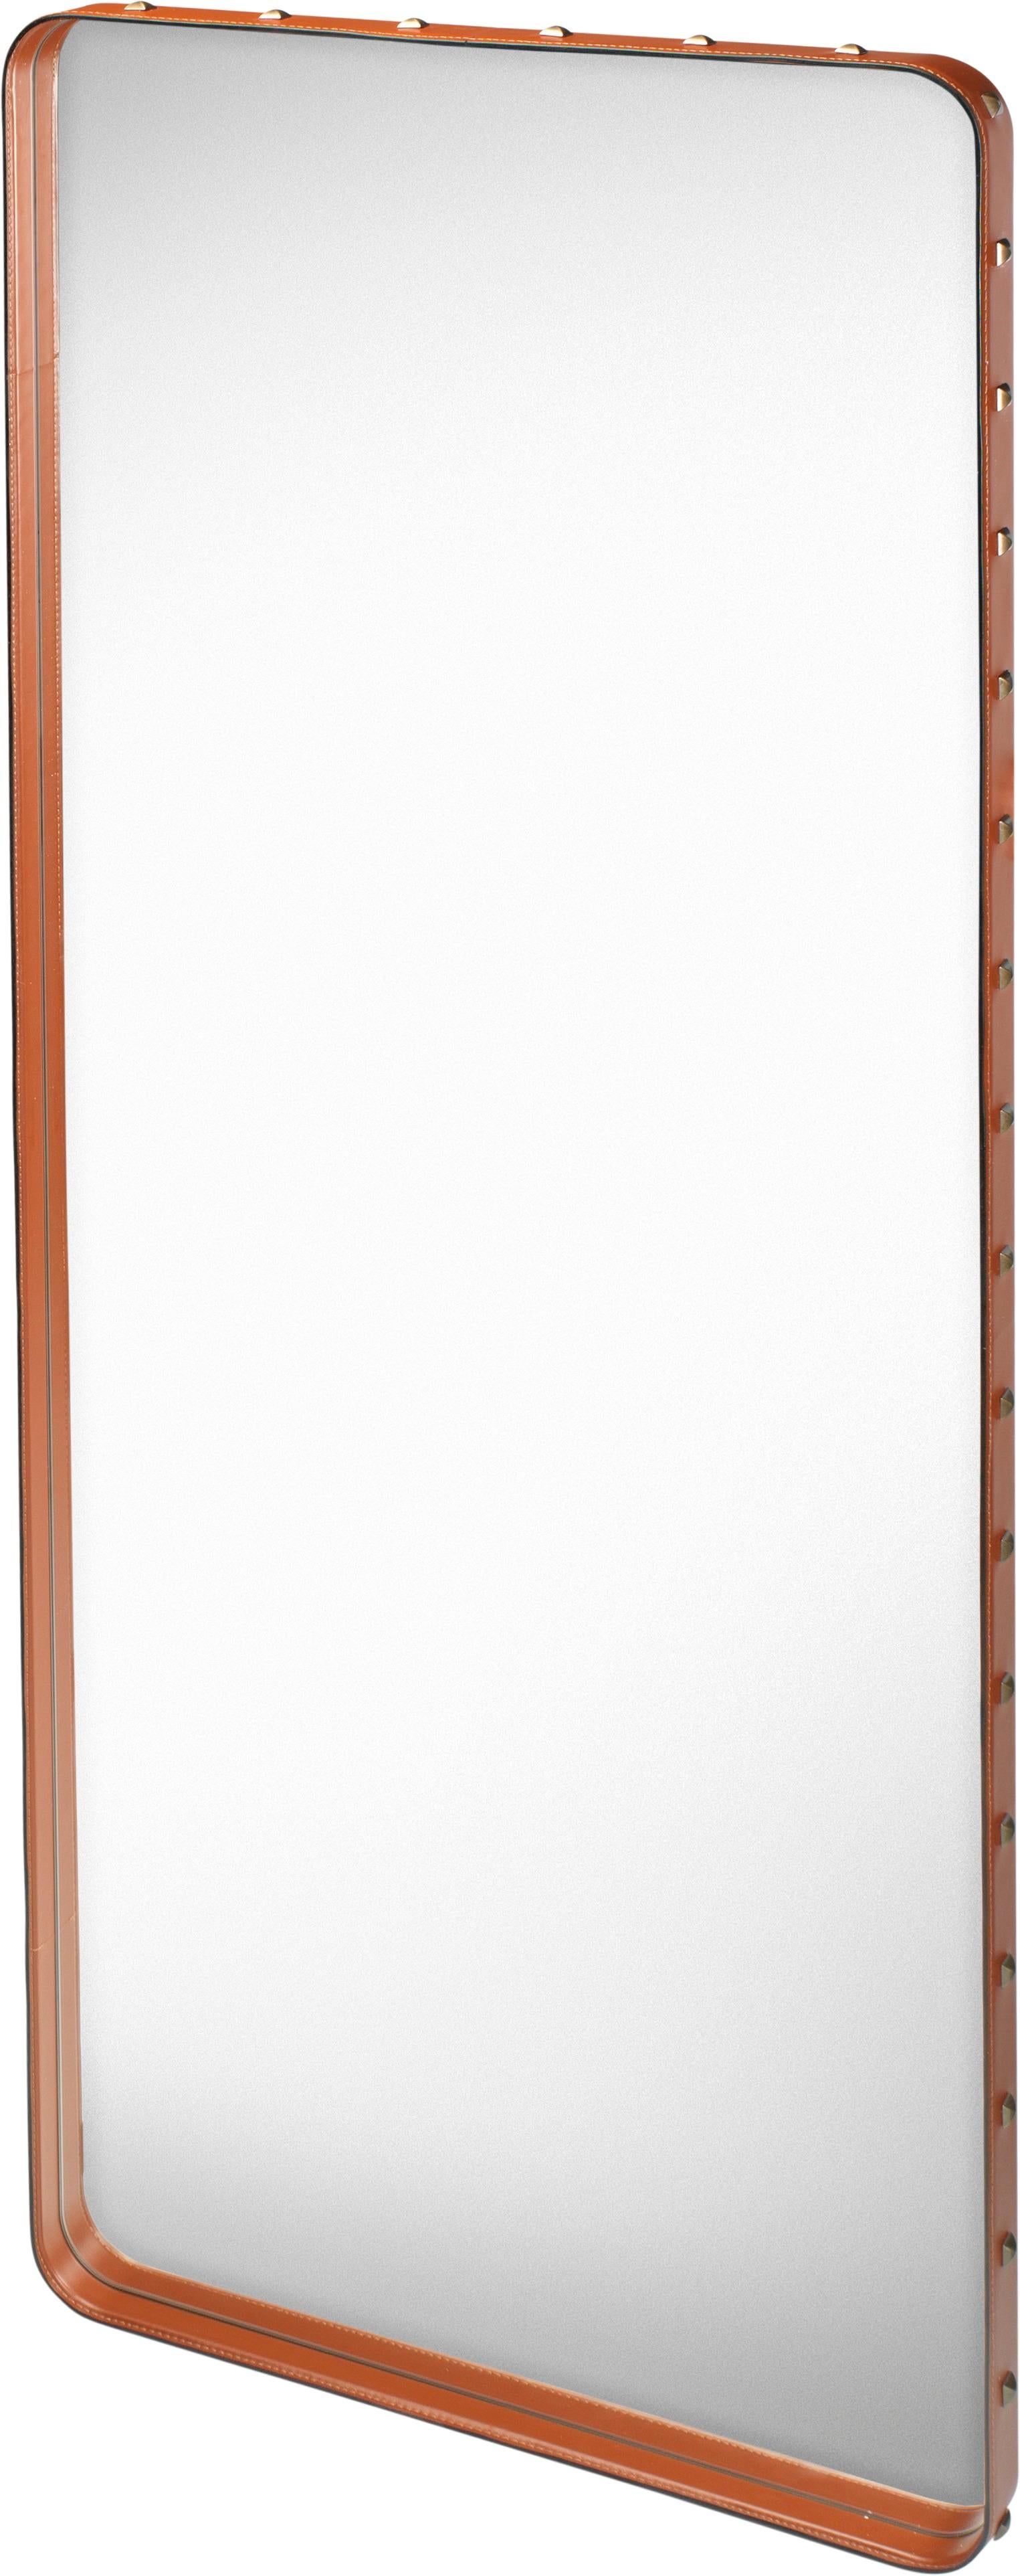 Grand miroir mural 'Rectangulaire' de Jacques Adnet en cuir beige pour GUBI. Conçu à l'origine par Jacques Adnet dans les années 1950, ce miroir incroyablement raffiné est exécuté en cuir aniline de haute qualité et orné de rivets en laiton bruni